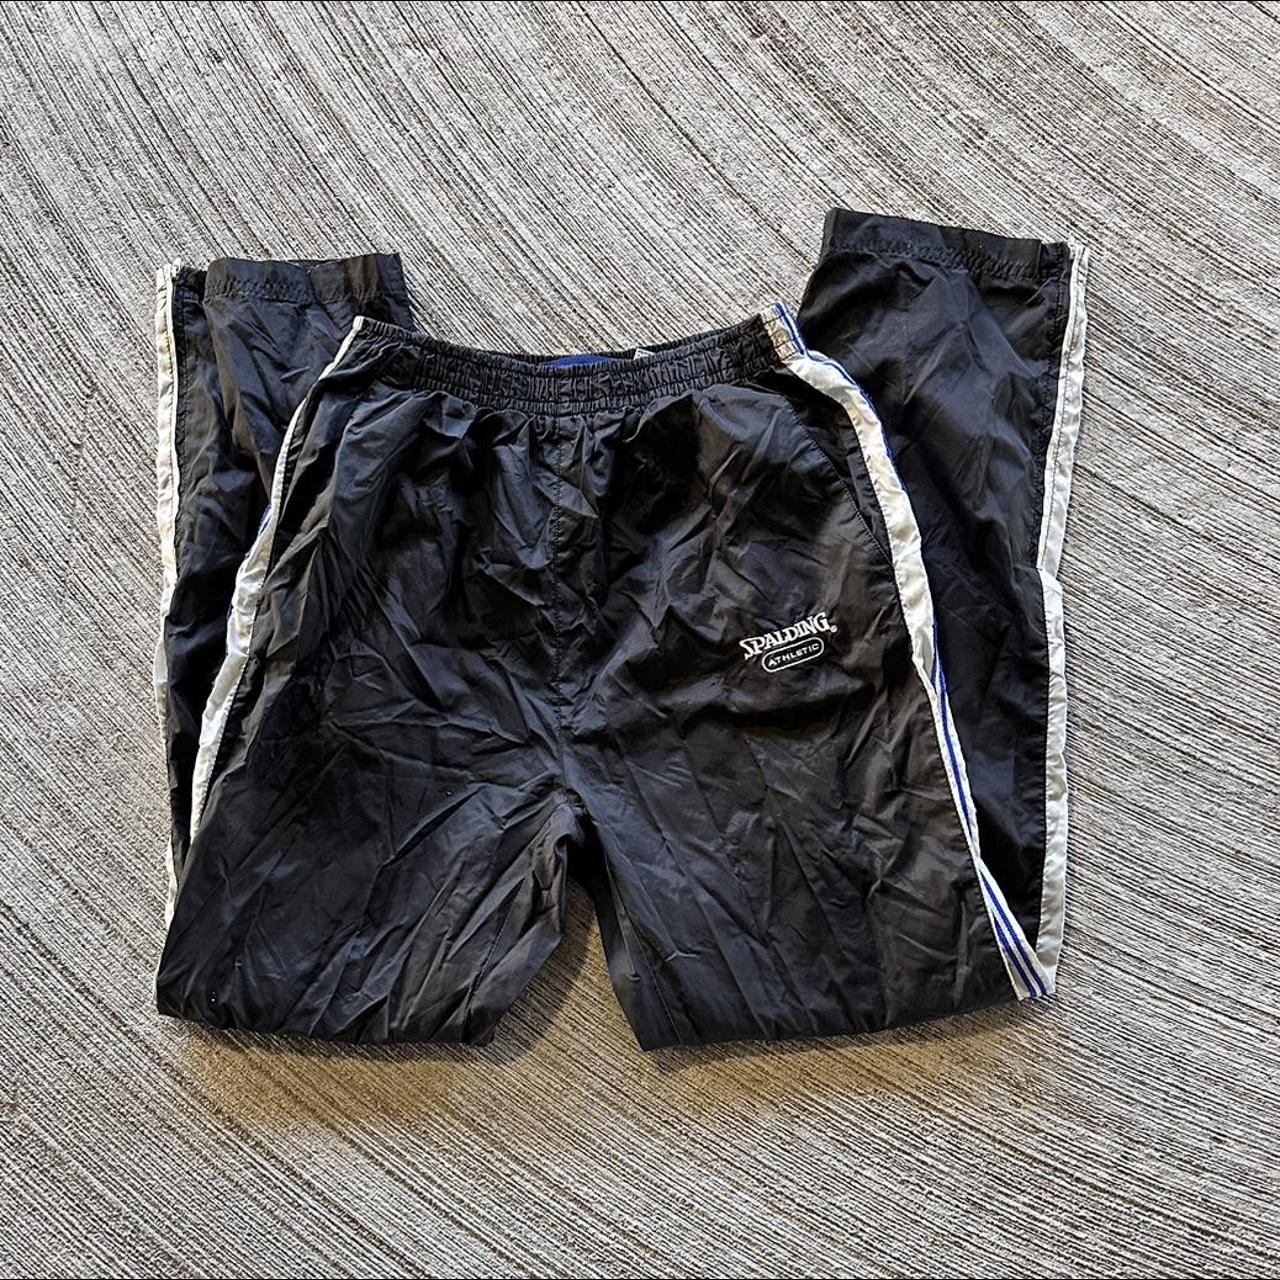 Vintage Spalding sweatpants. Size : ( 31/32 )... - Depop